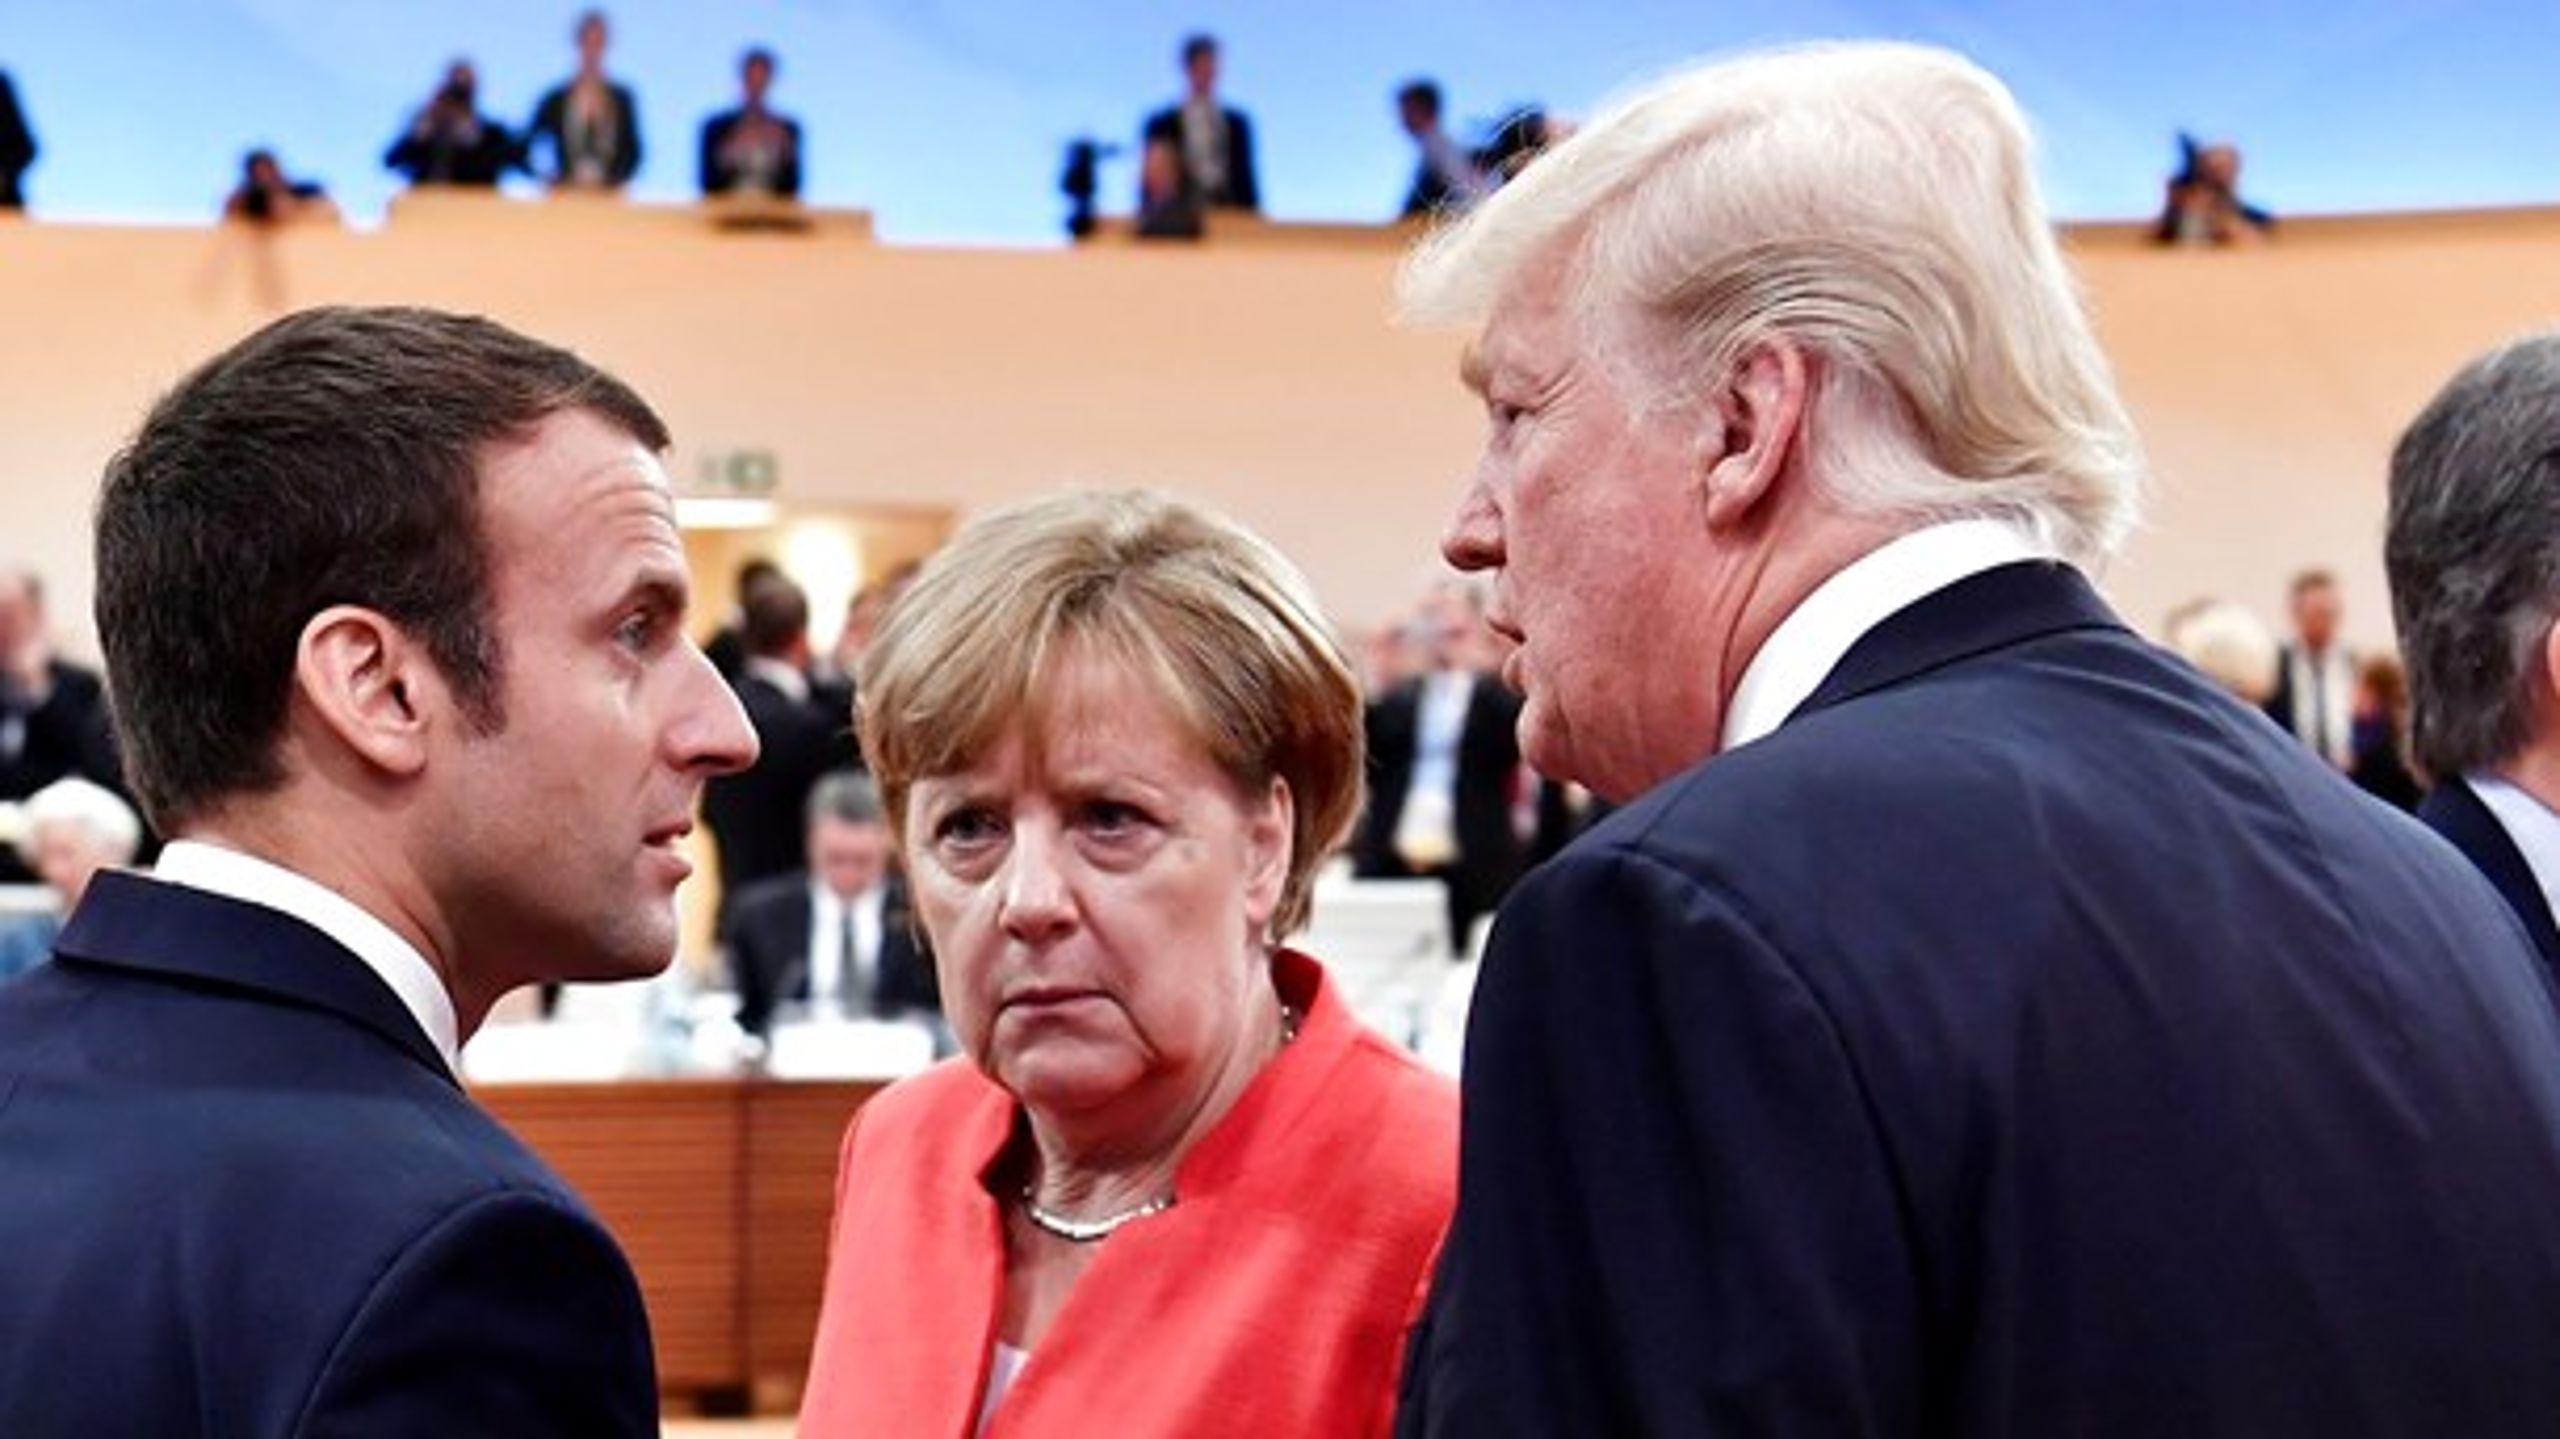 Det er 100 år siden afslutningen på Første Verdenskrig. Det markeres i Paris, hvor den franske præsident har inviteret blandt andre den tyske kansler, Angela Merkel, og den amerikanske præsident, Donald Trump.